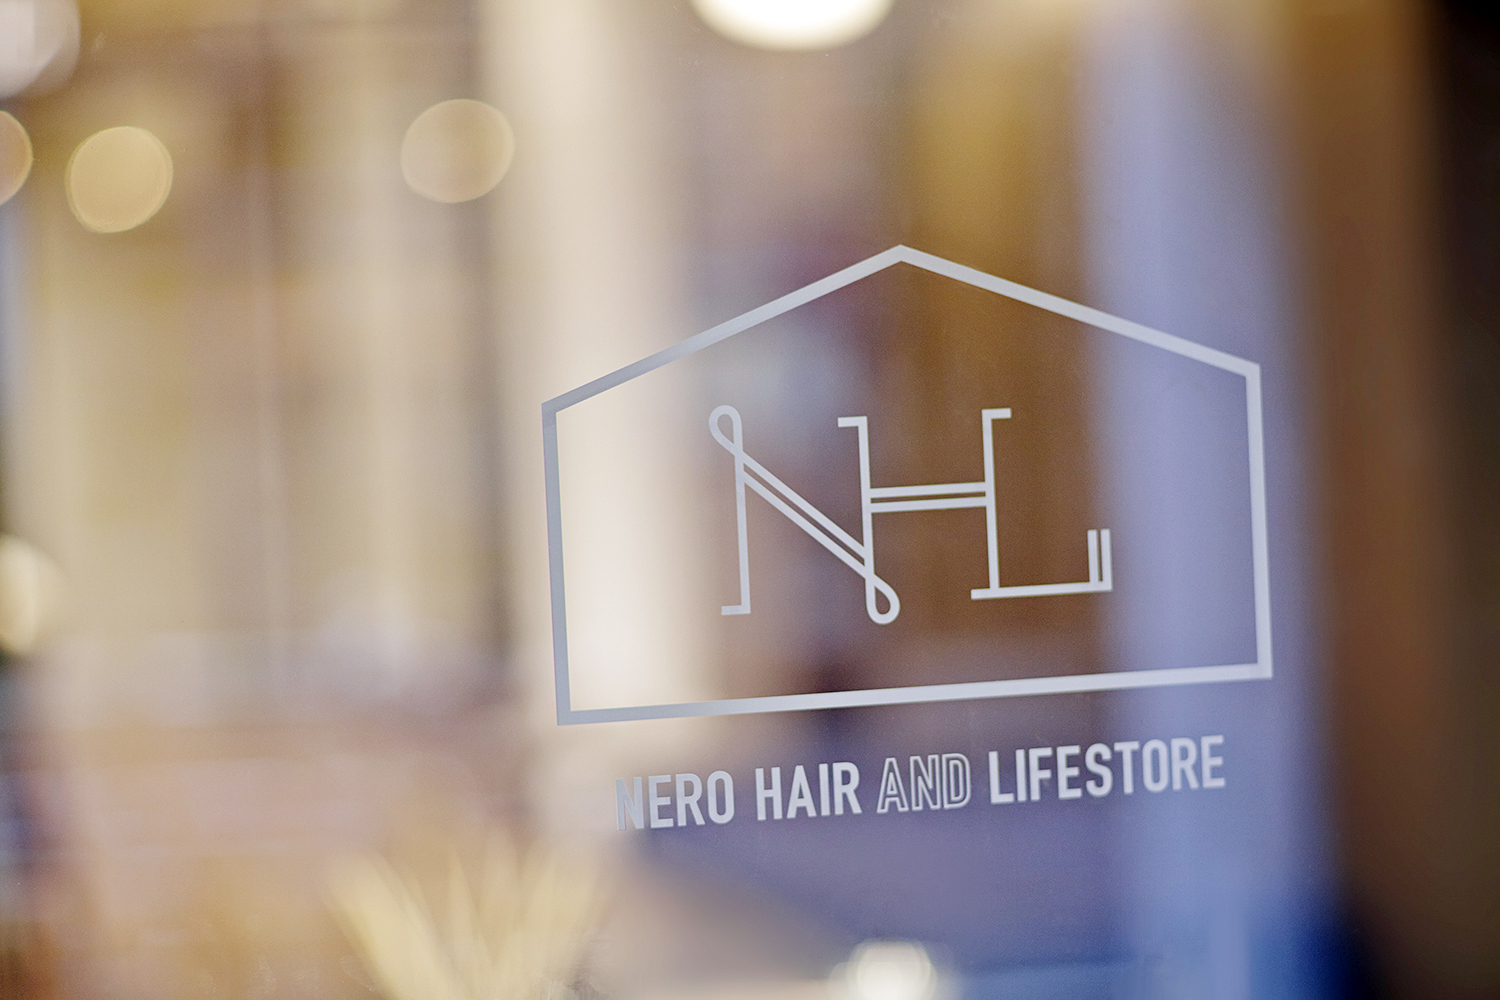 Nero Hair And Lifestore Gaimgraphics